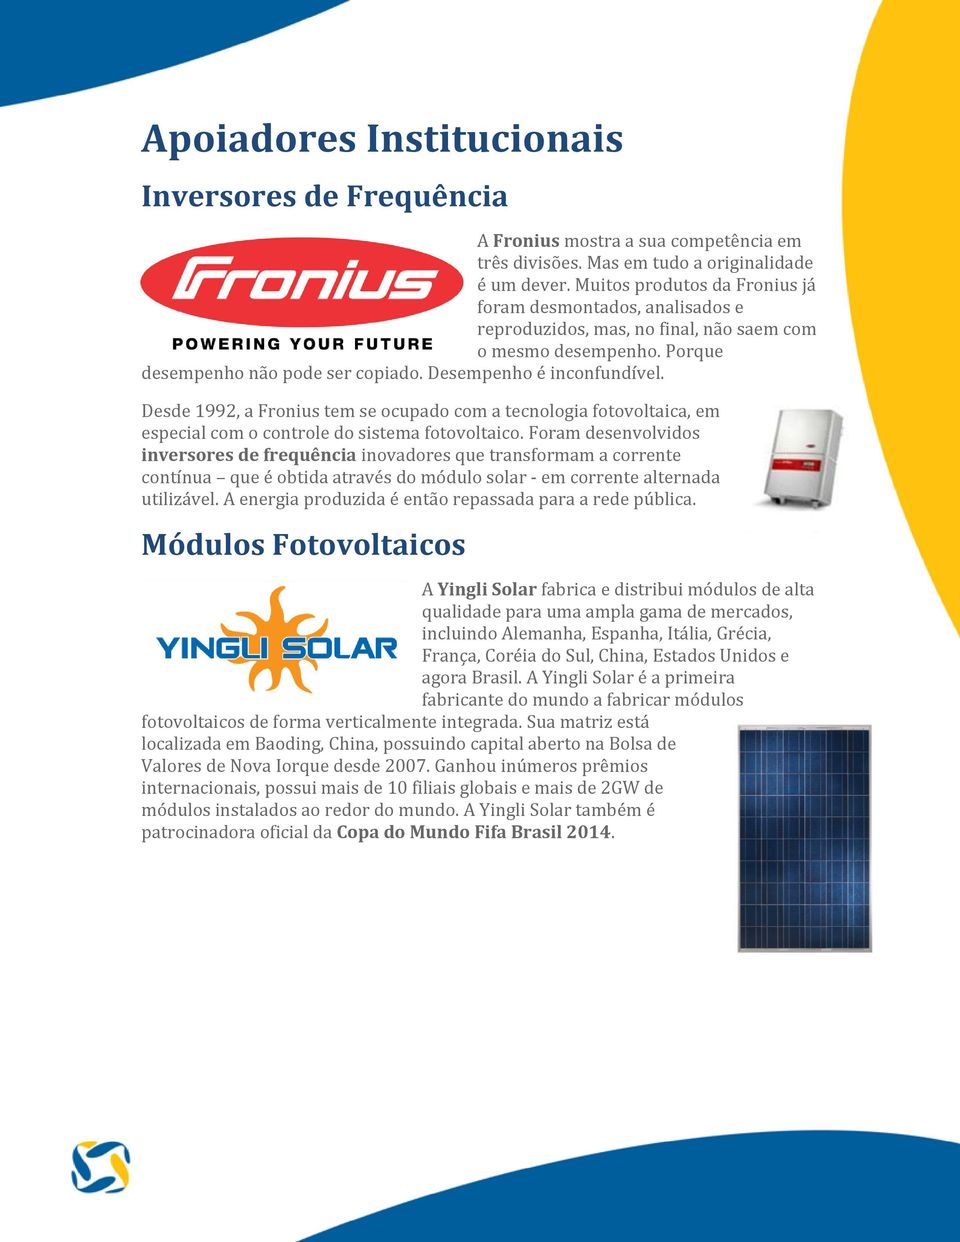 Desde 1992, a Fronius tem se ocupado com a tecnologia fotovoltaica, em especial com o controle do sistema fotovoltaico.